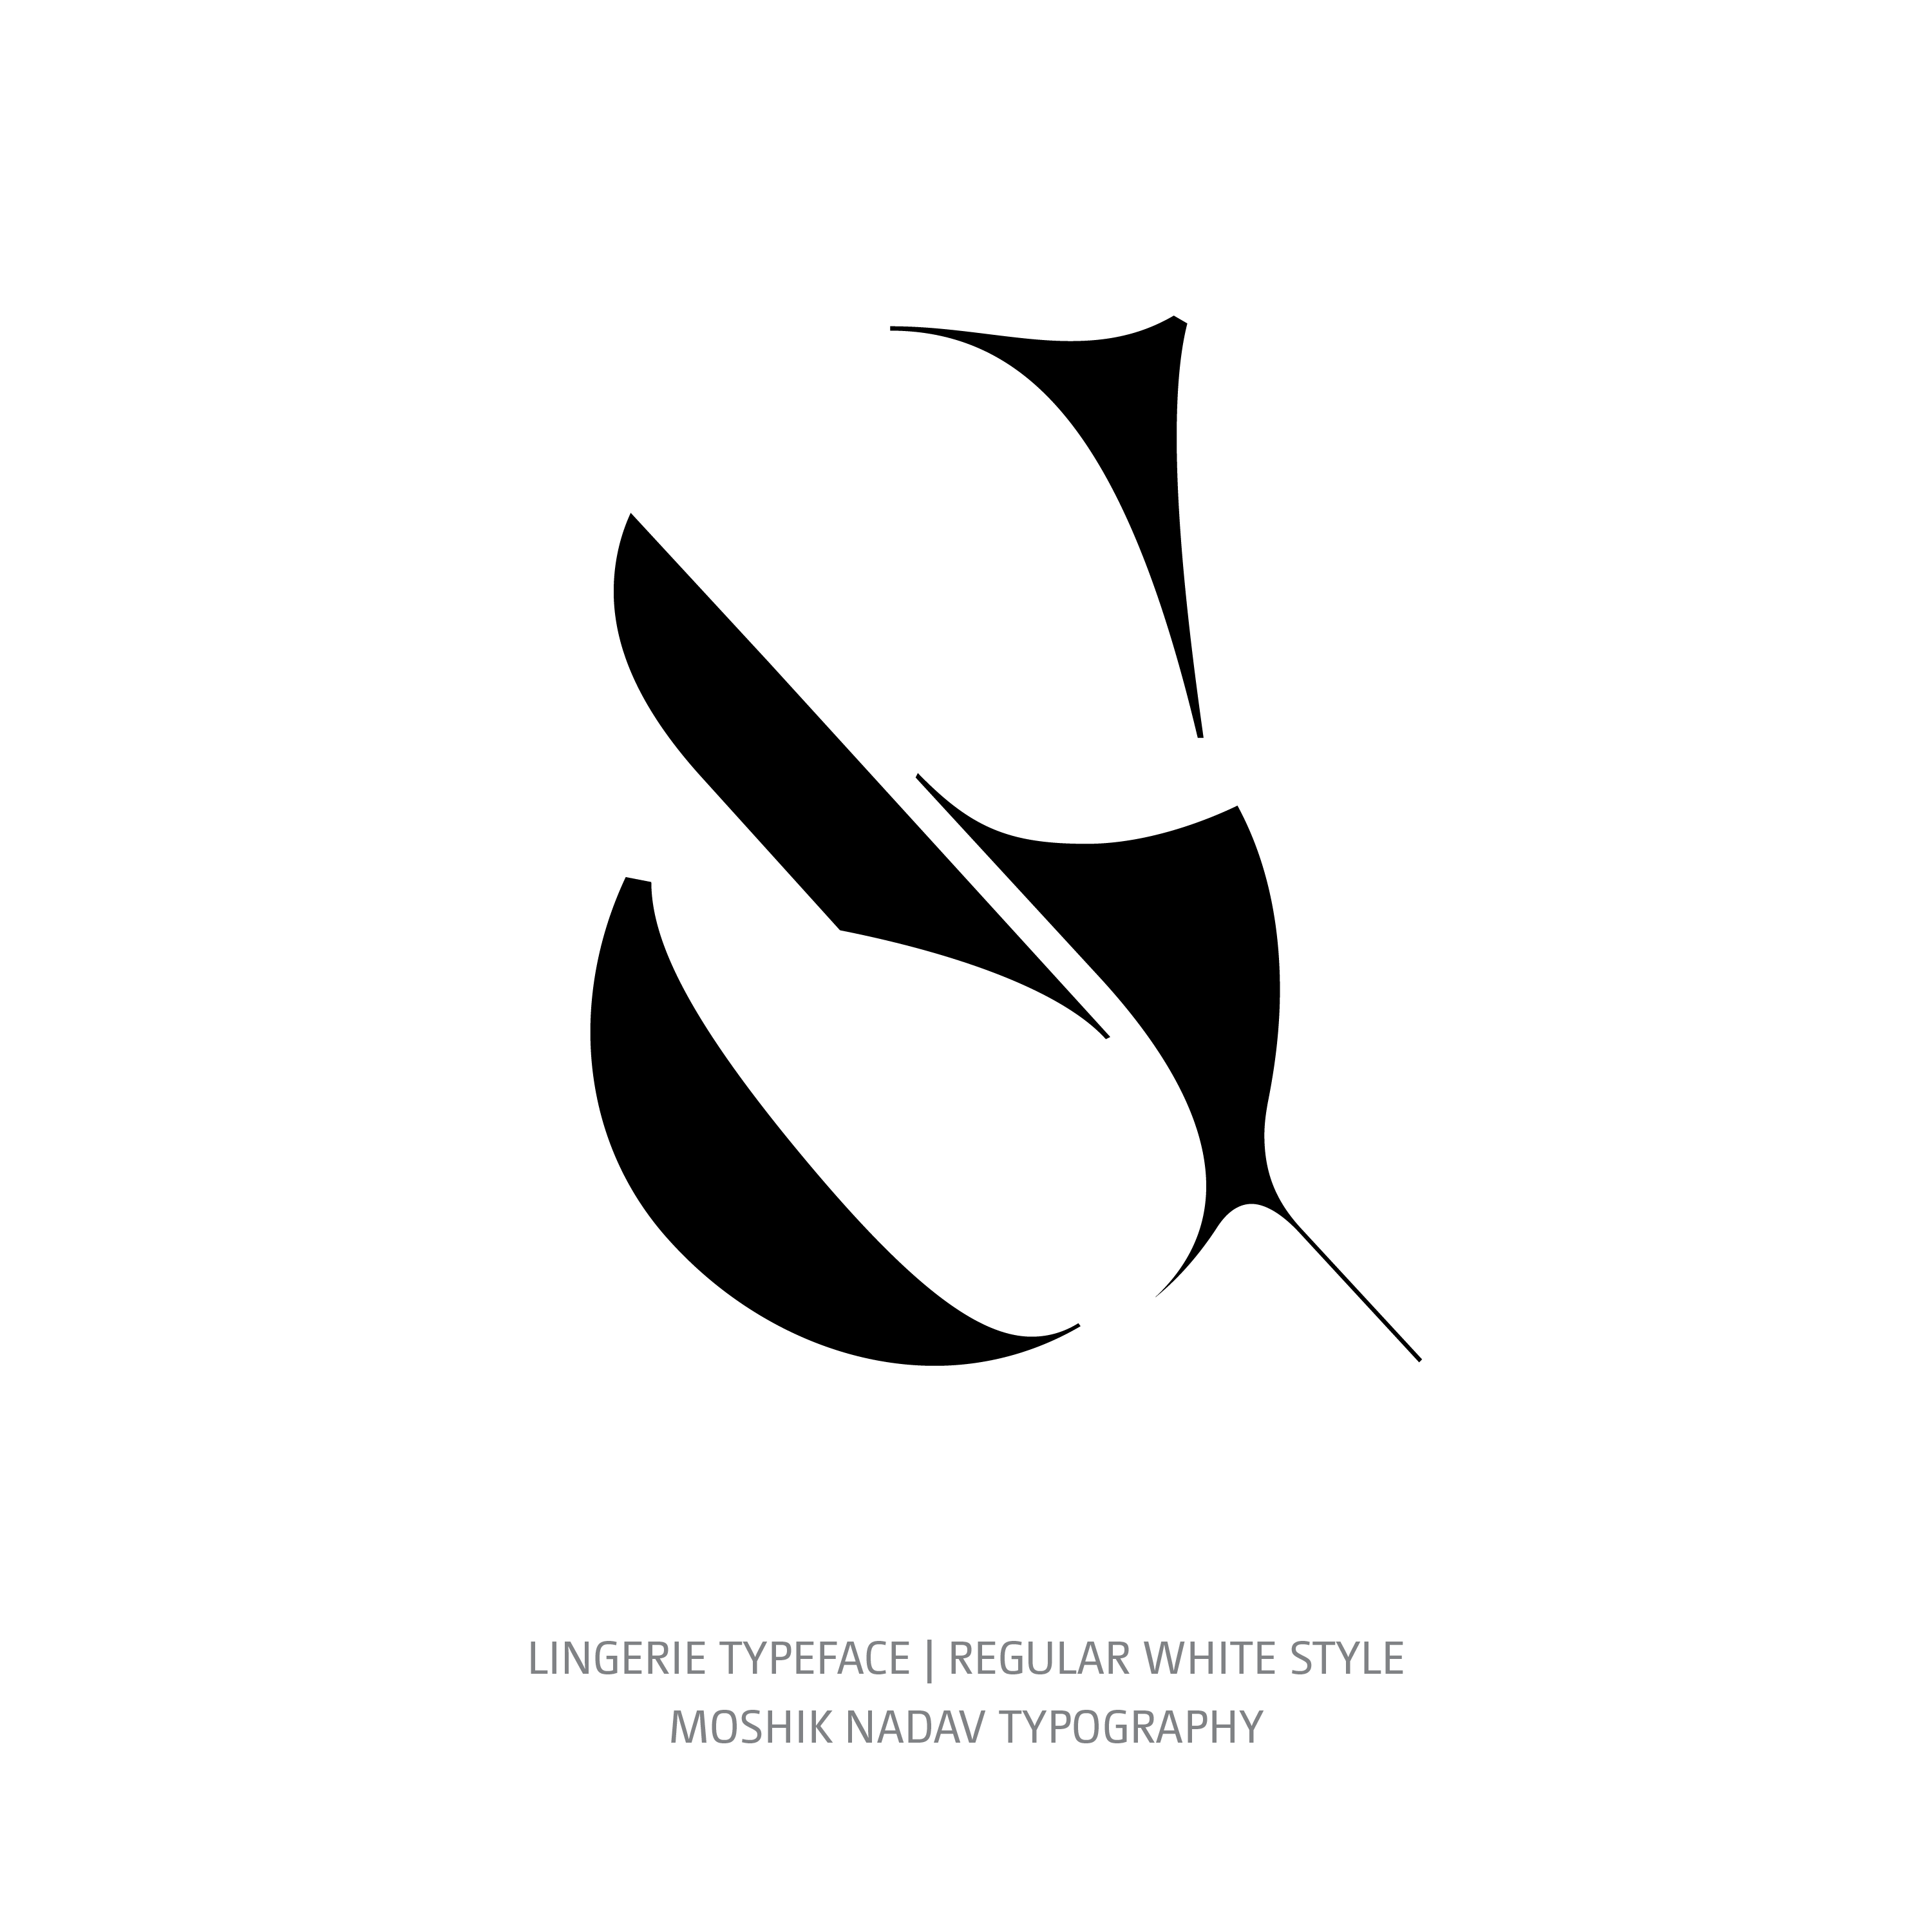 Lingerie Typeface Regular White ampersand